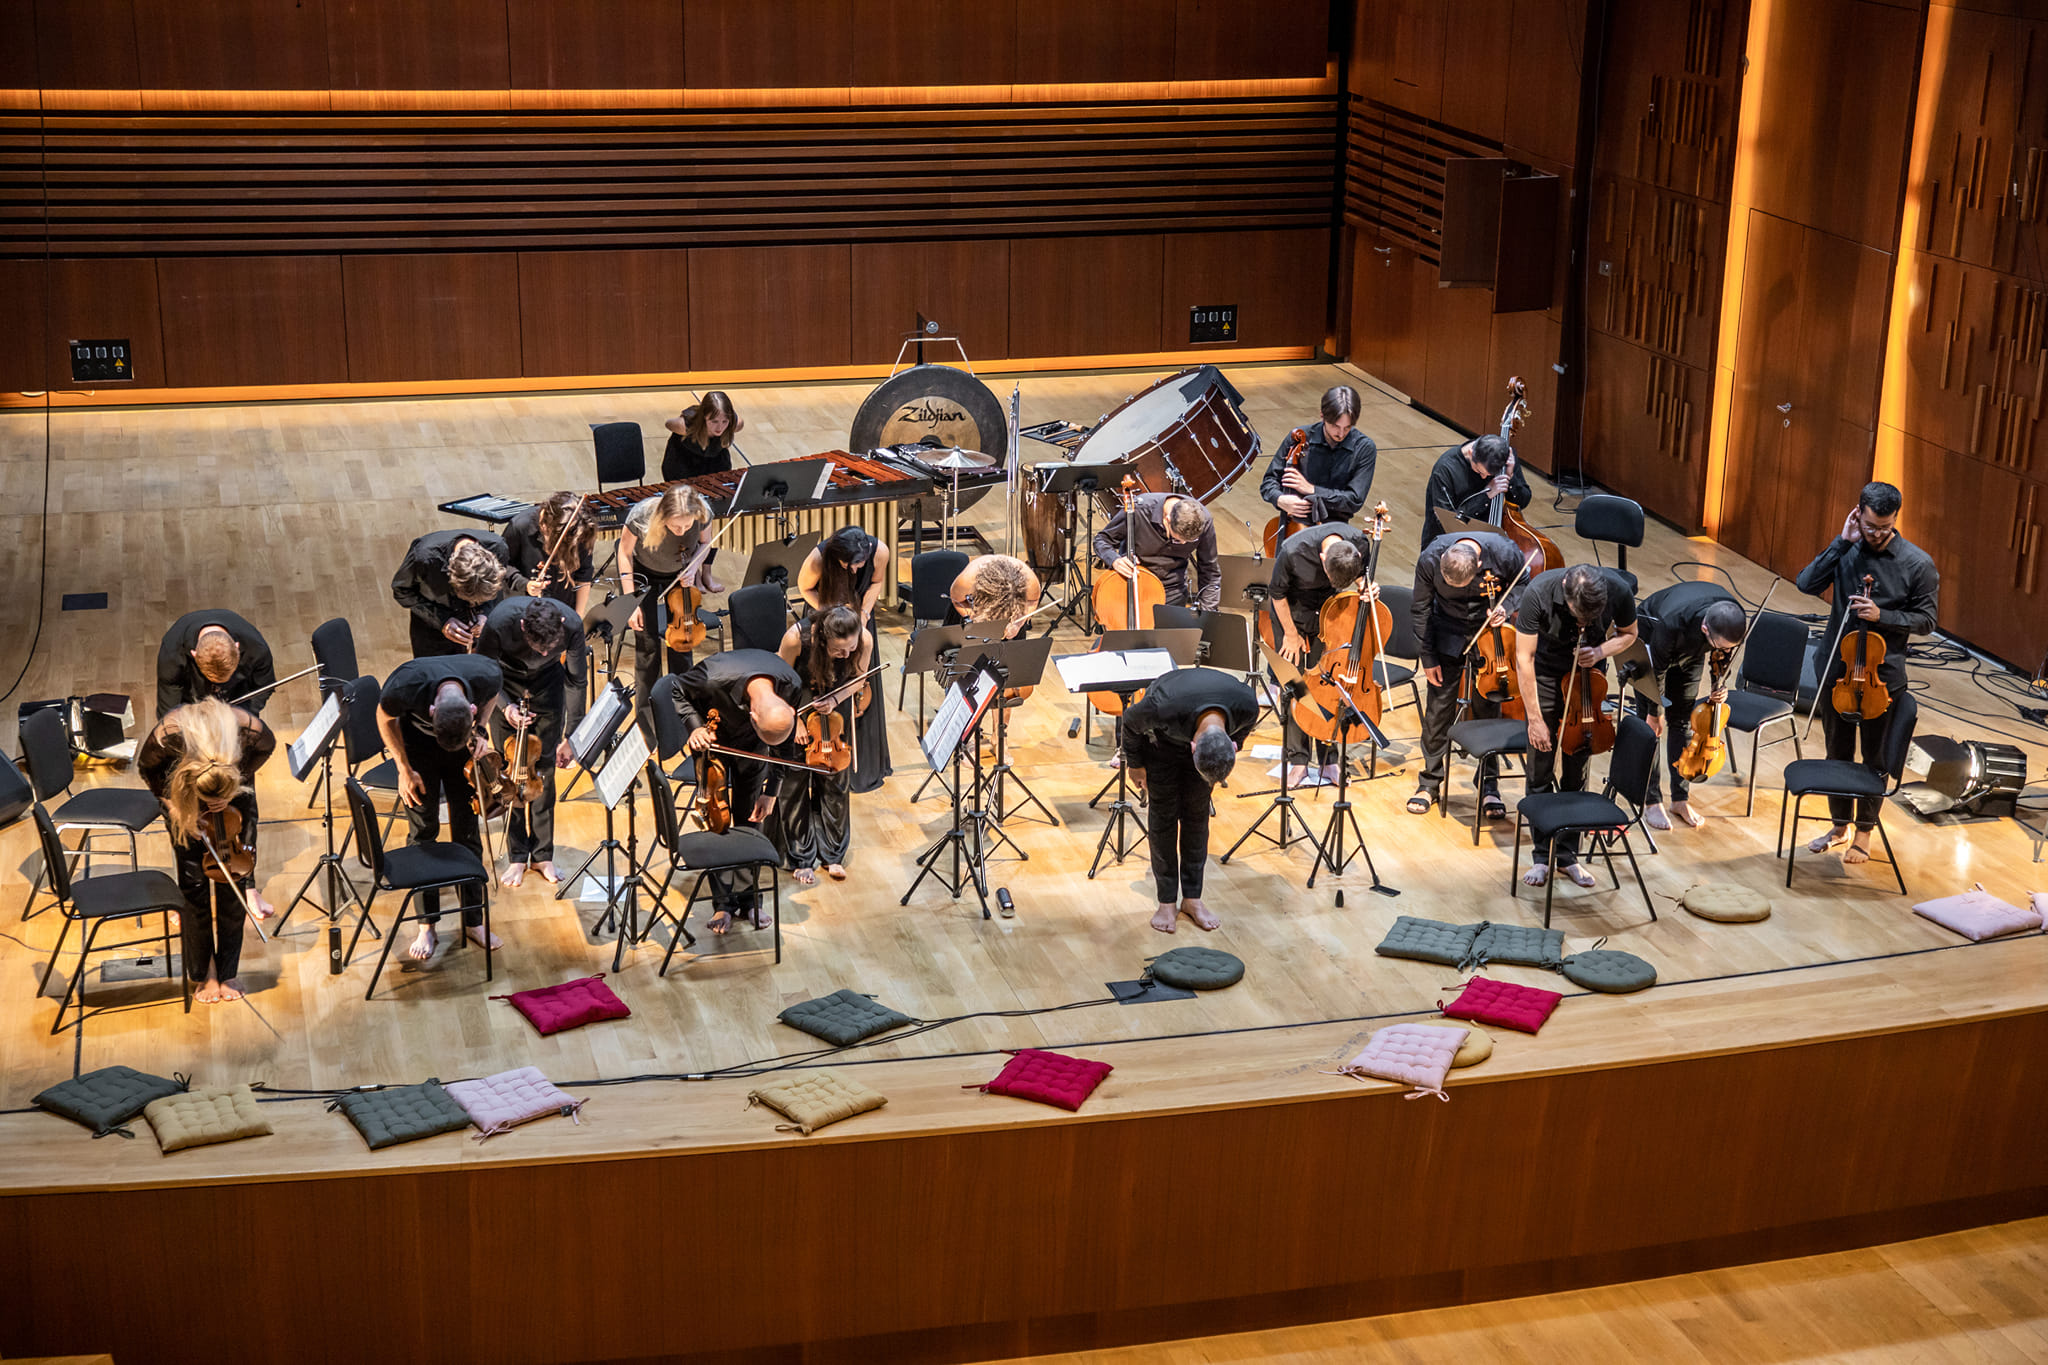 No Borders Orchestra, nisma kulturore që fitoi çmimin “Kampione e bashkëpunimit rajonal Dr Erhard Busek“. Foto nga No Borders Orchestra (Facebook)